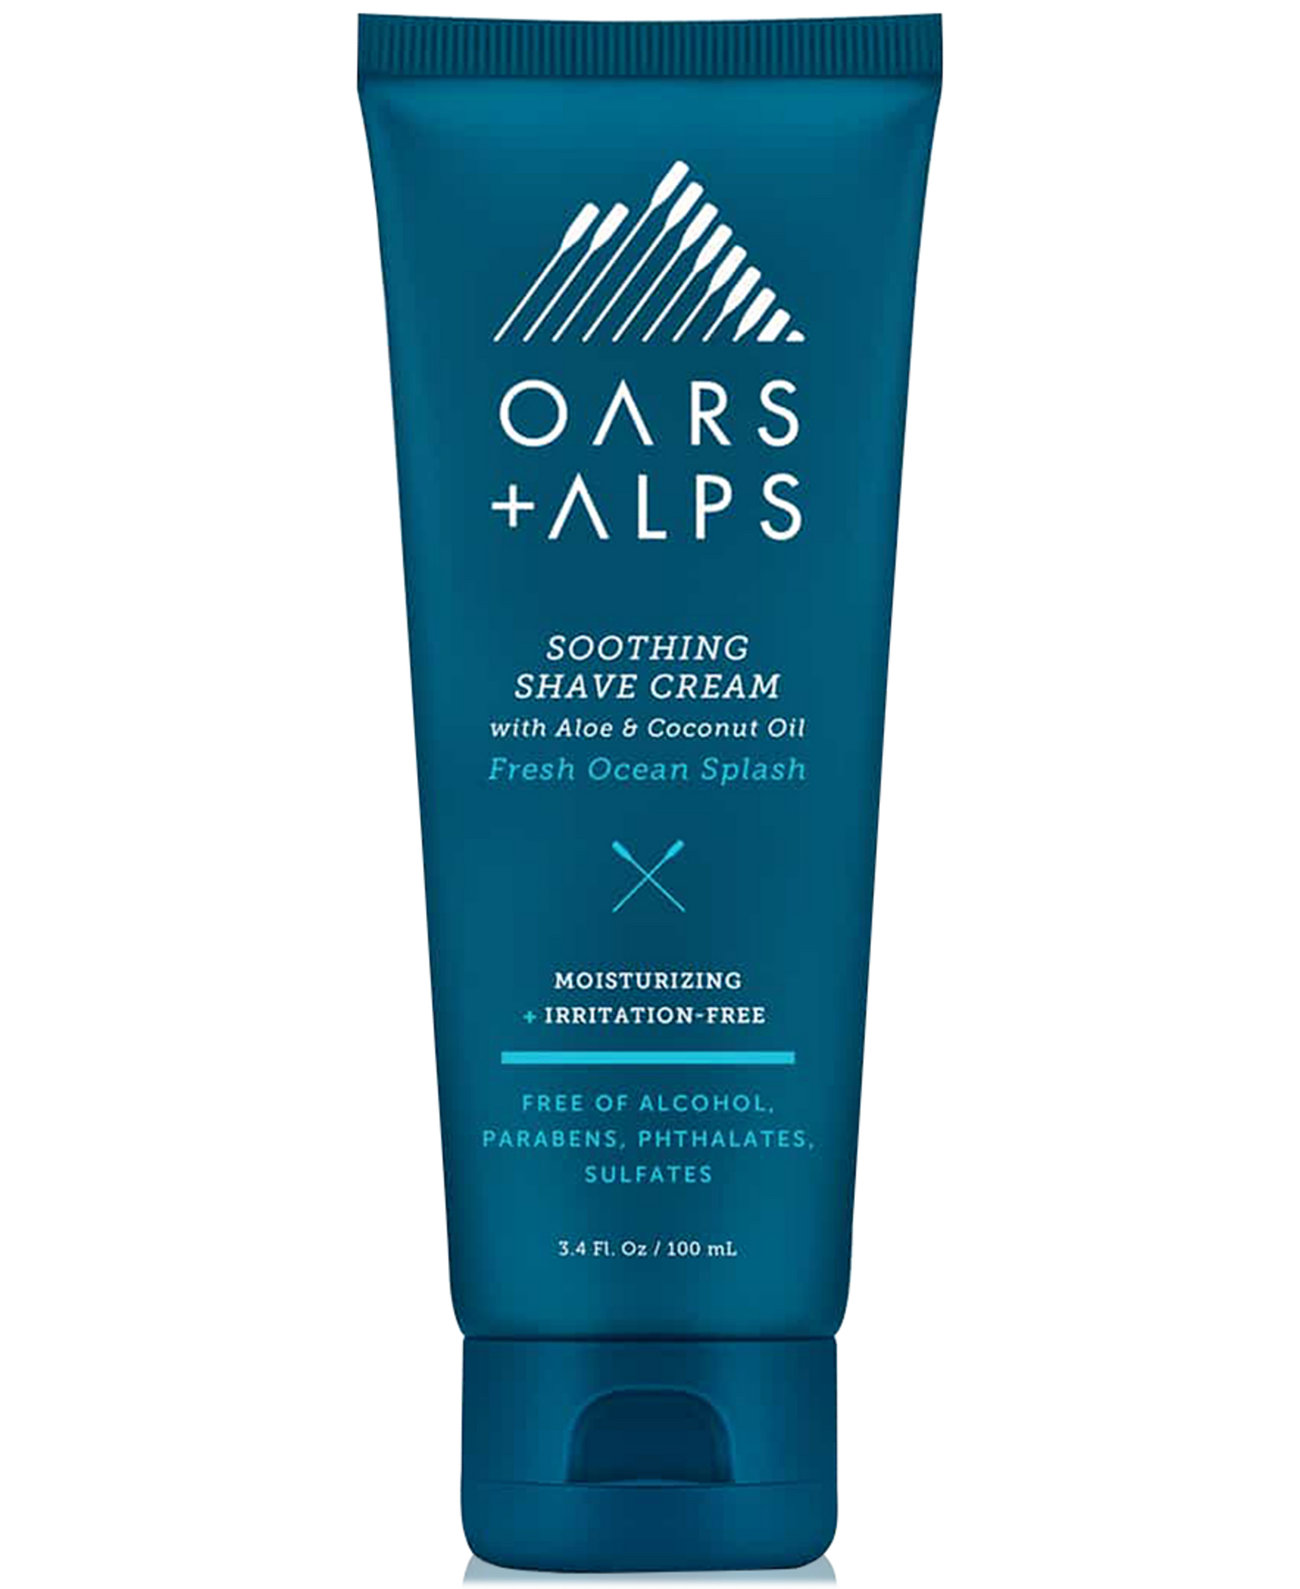 Успокаивающий крем для бритья Oars + Alps